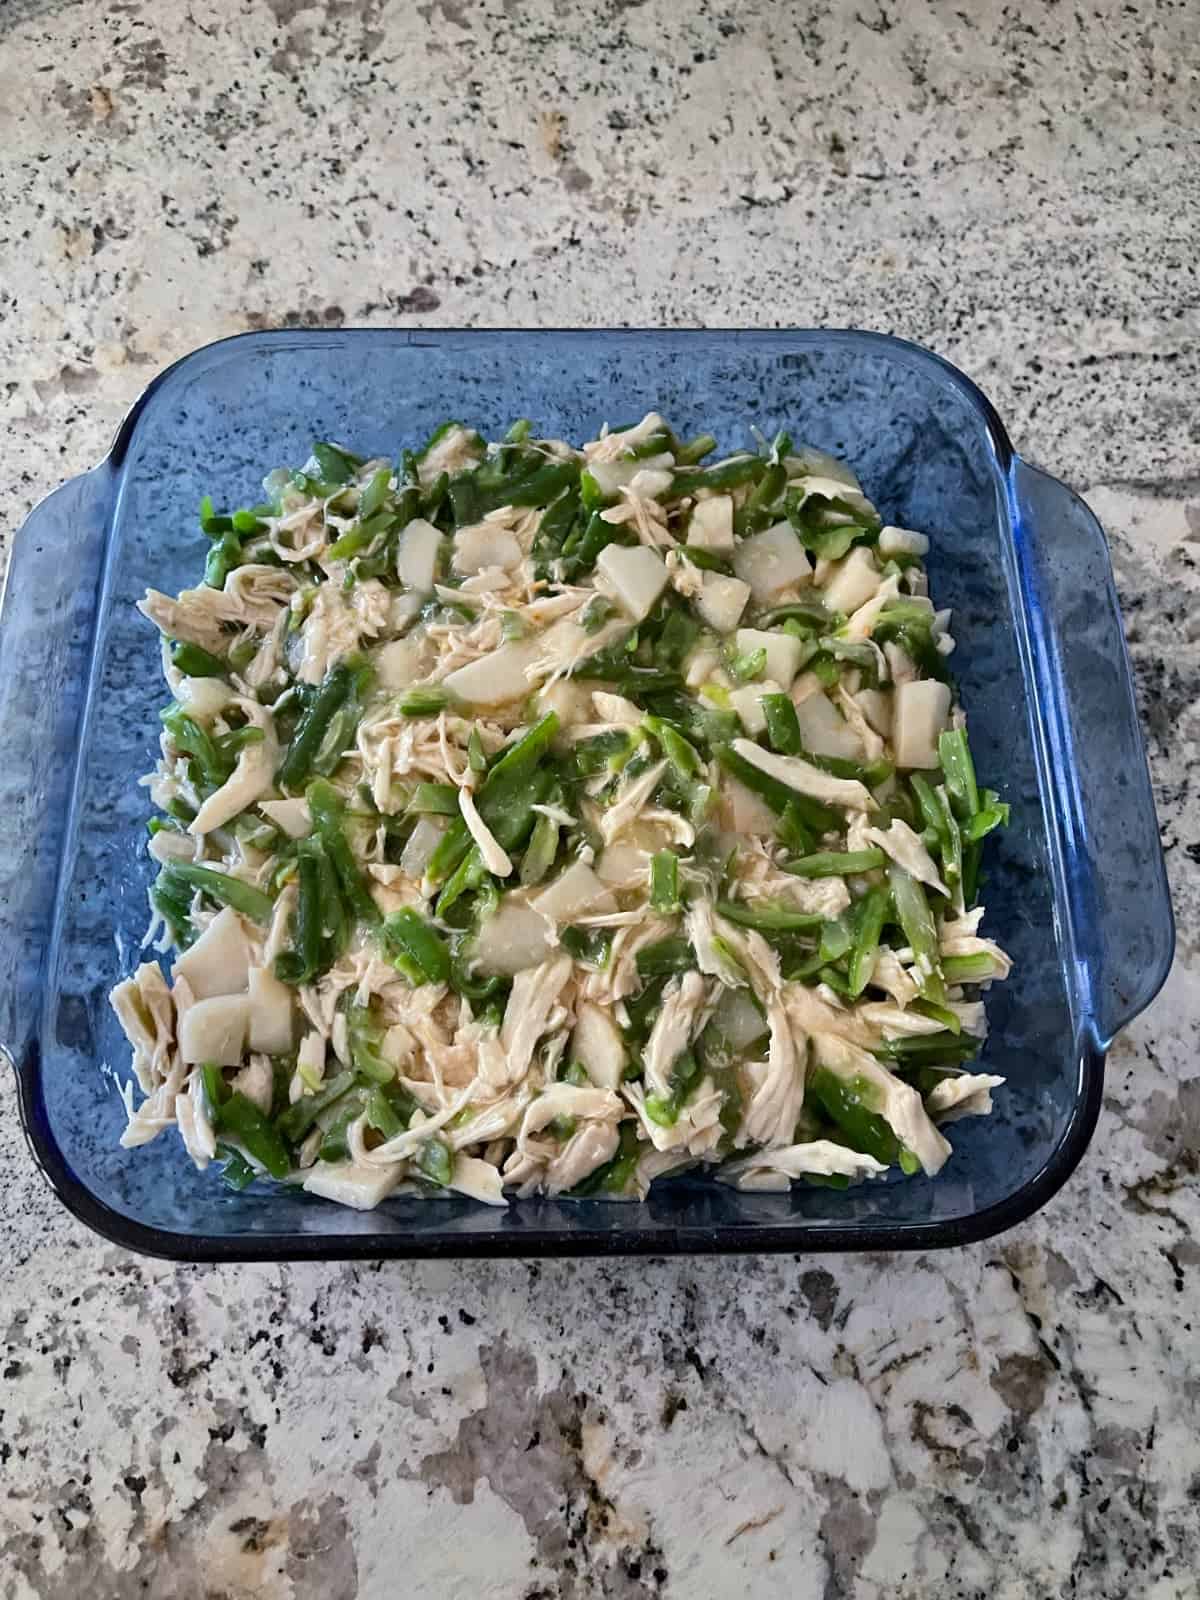 Chicken gravy, green beans, water chestnuts, shredded chicken in square casserole baking dish.